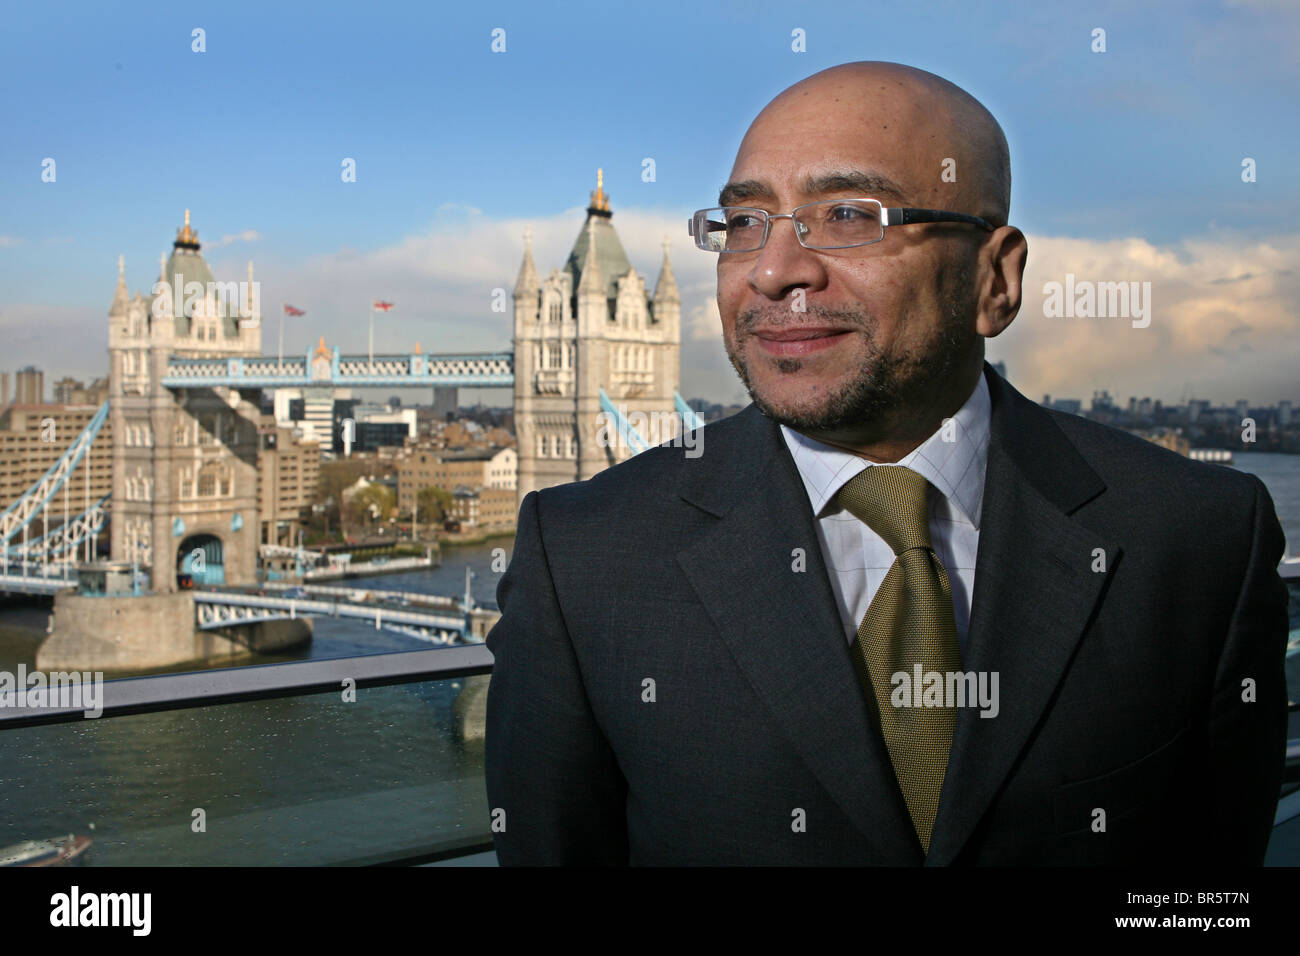 Lee Jasper, Conseiller principal en politiques sur les égalités pour le maire du Grand Londres se place en avant du Tower Bridge, Londres. Banque D'Images